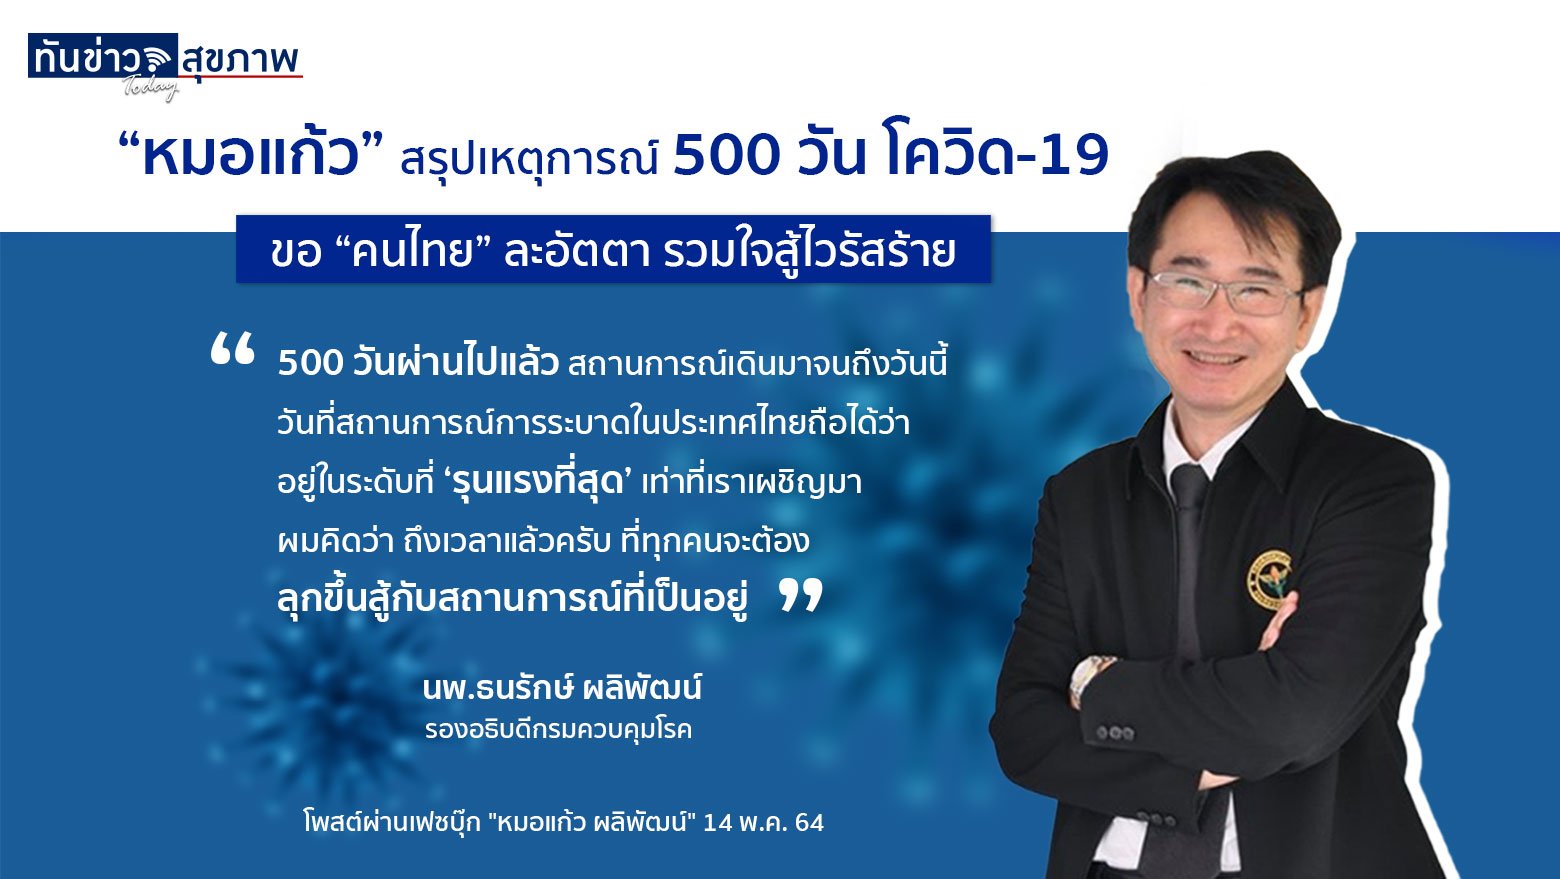 “หมอแก้ว” สรุปเหตุการณ์ 500 วัน โควิด-19  ขอ “คนไทย” ละอัตตา รวมใจสู้ไวรัสร้าย